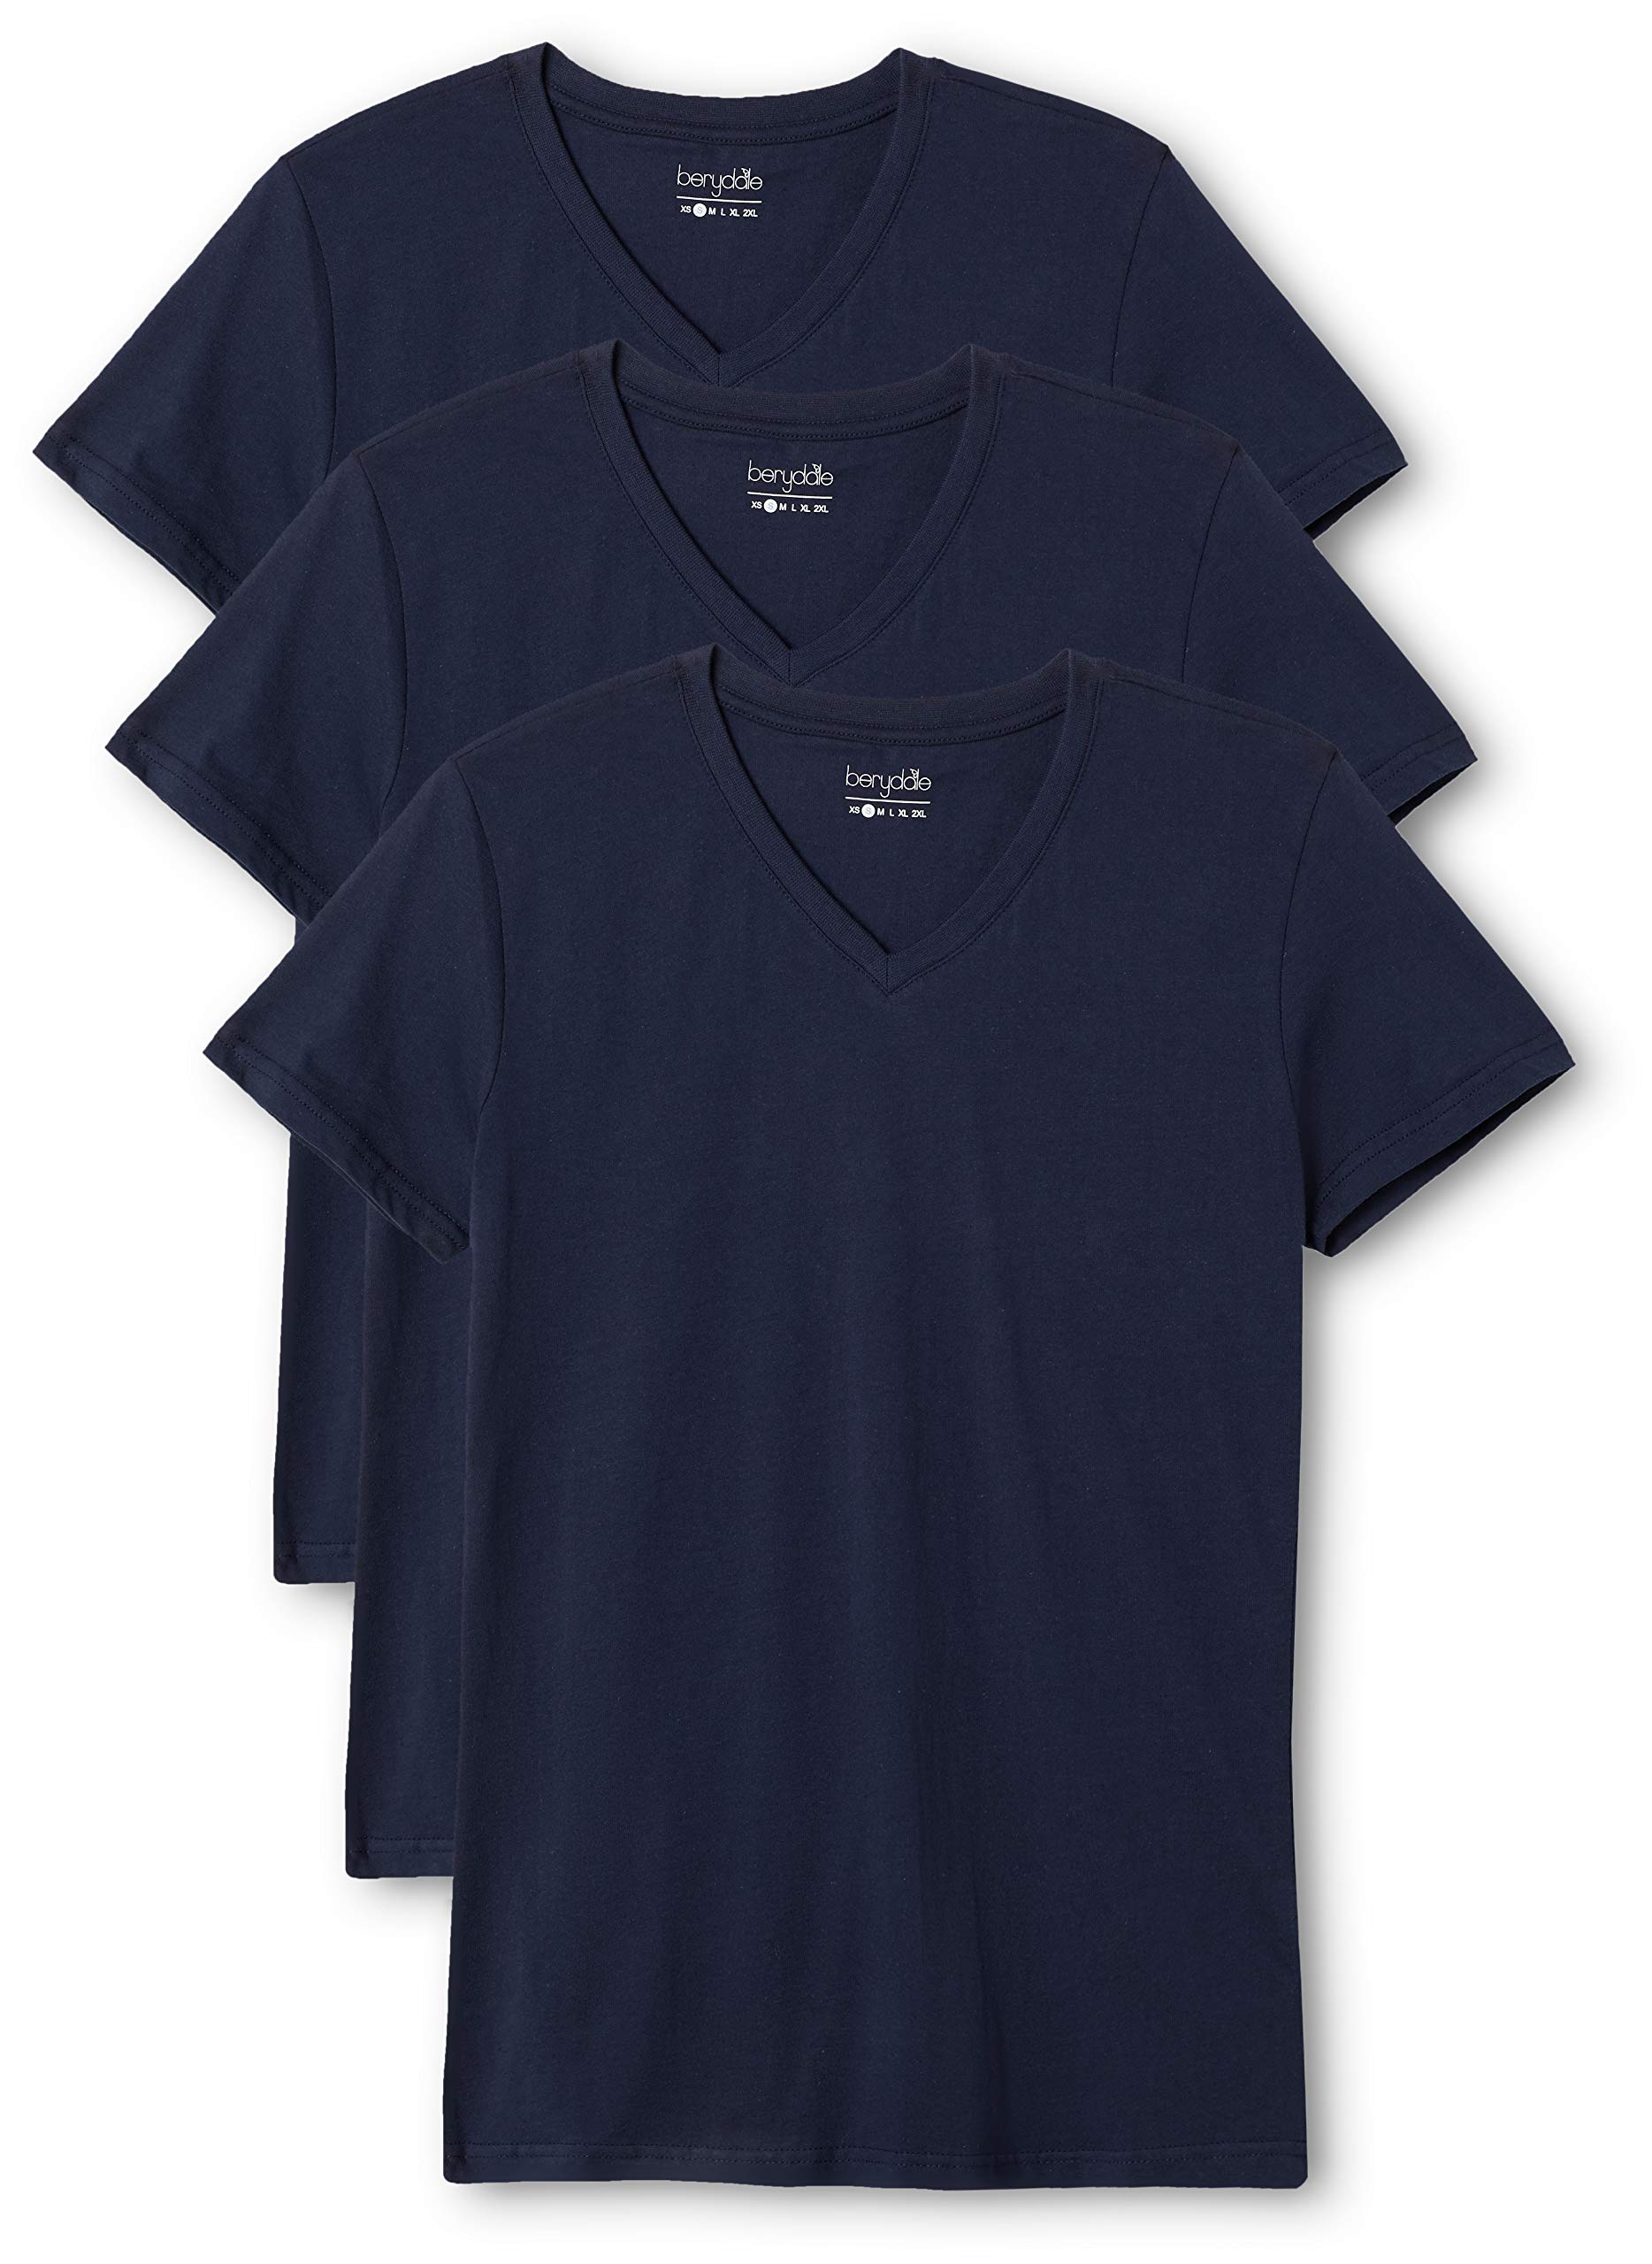 berydale Damen T-Shirt Bd158, Navy - 3er Pack, XL